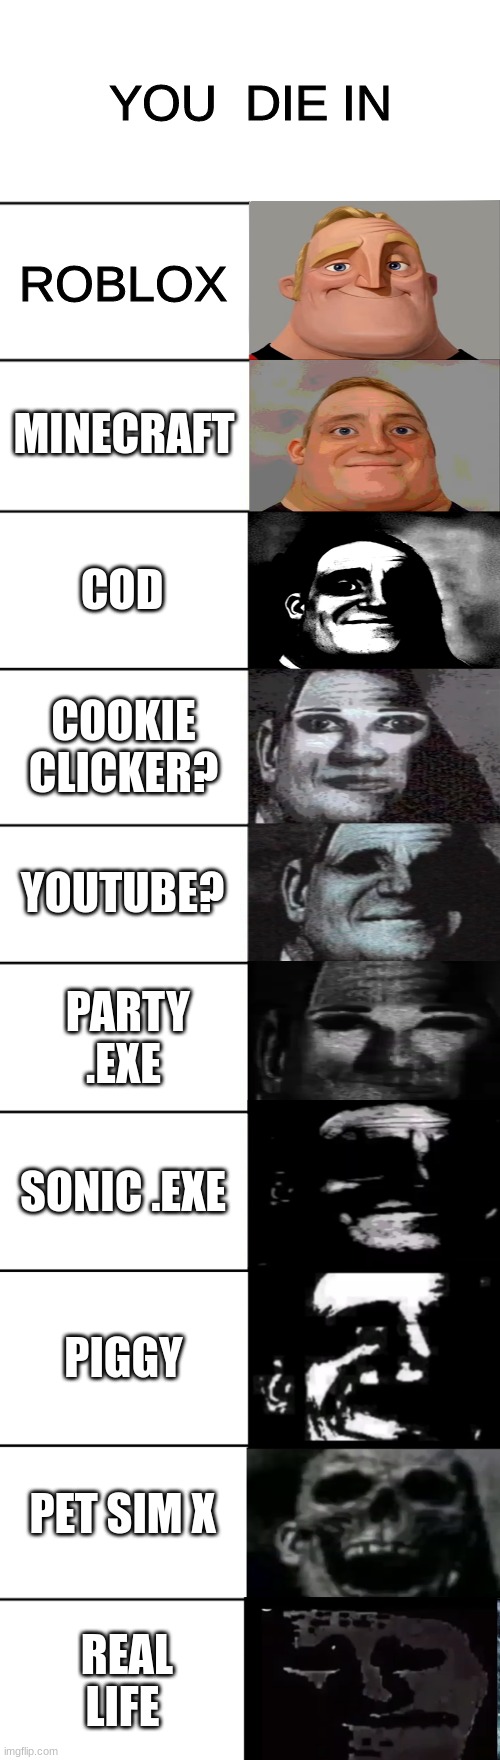 Uncanny Cookie Clicker